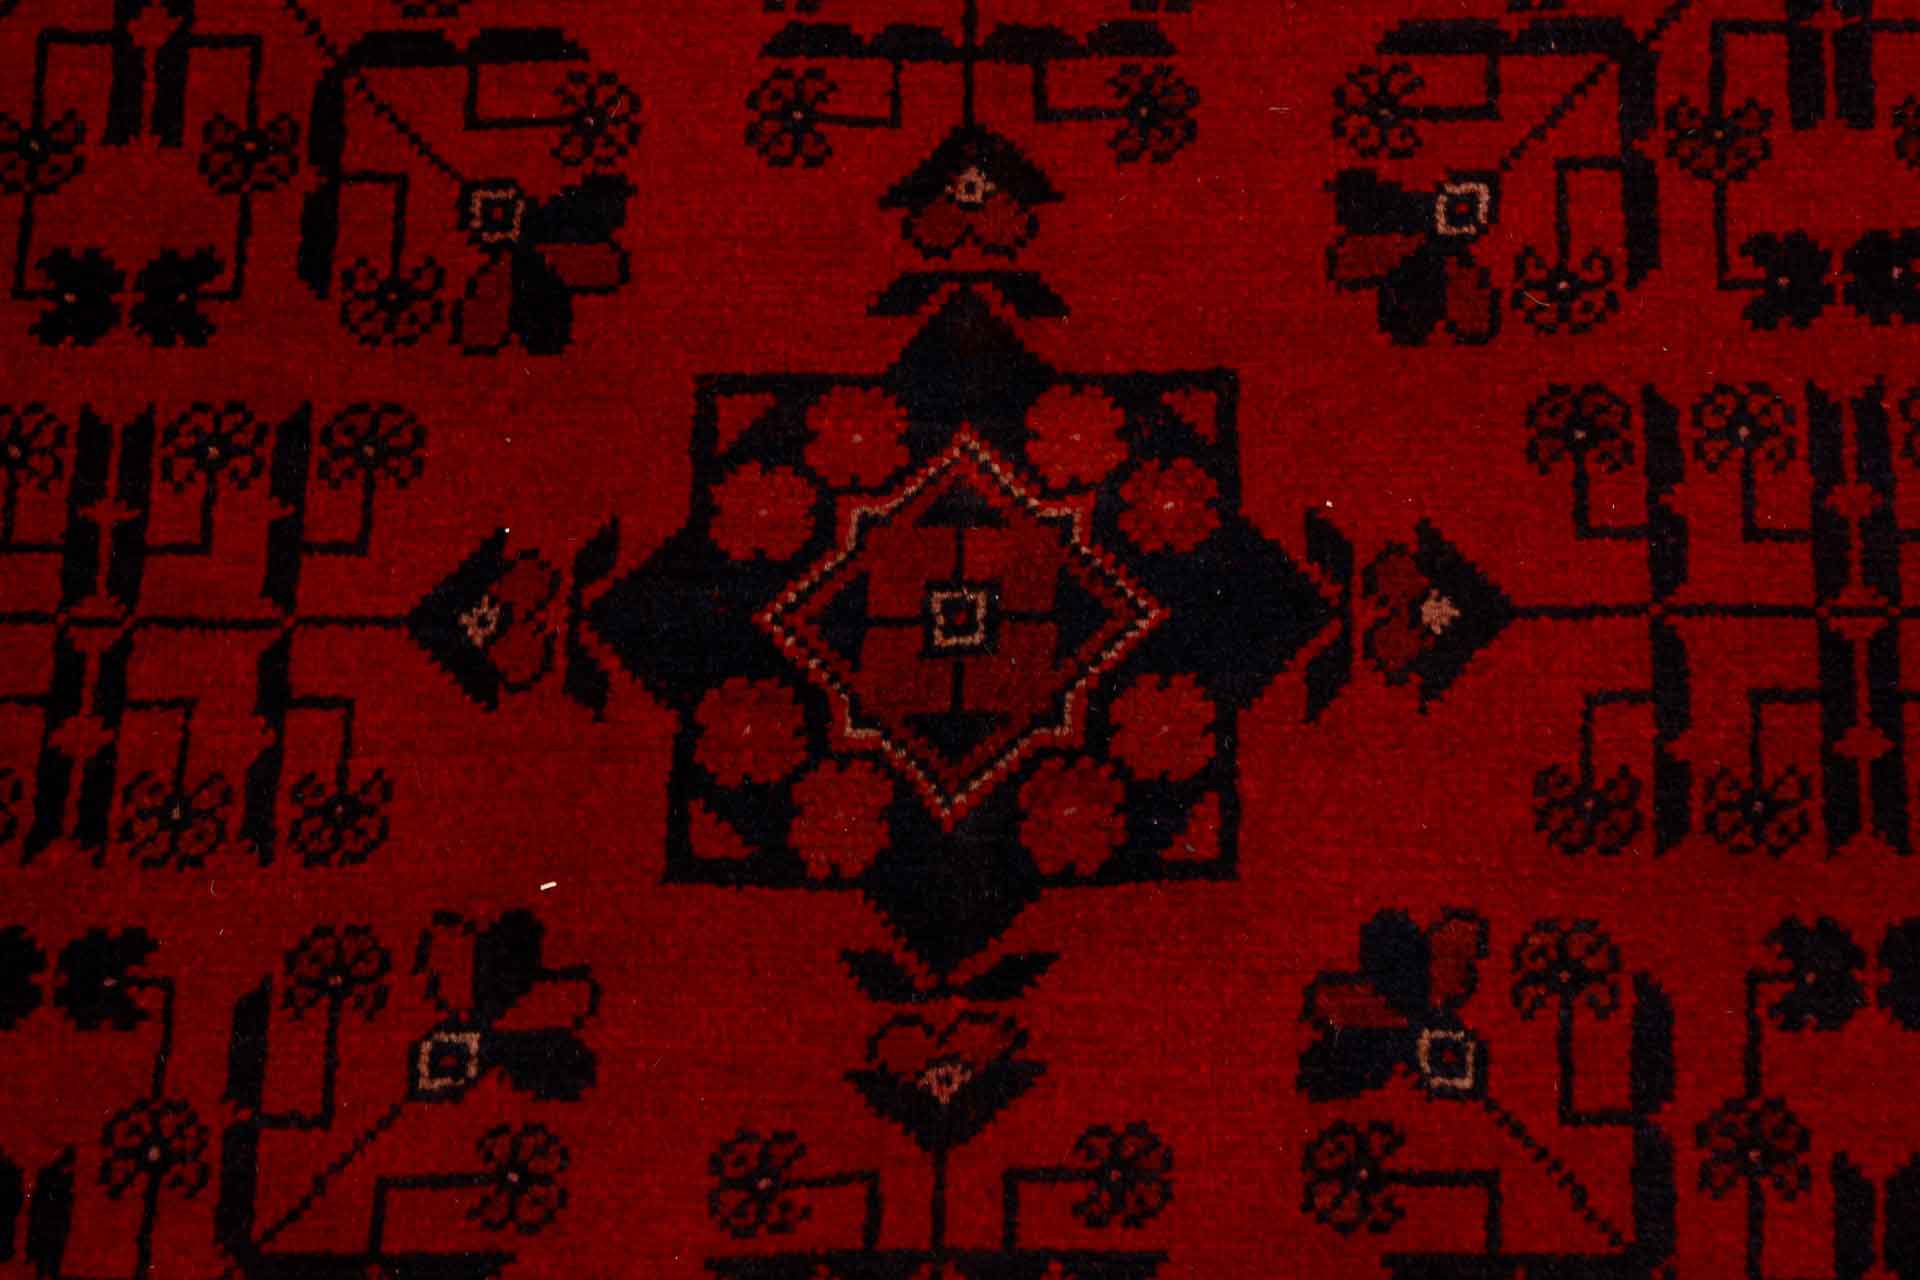 Orientální koberec Mauri Exkluziv